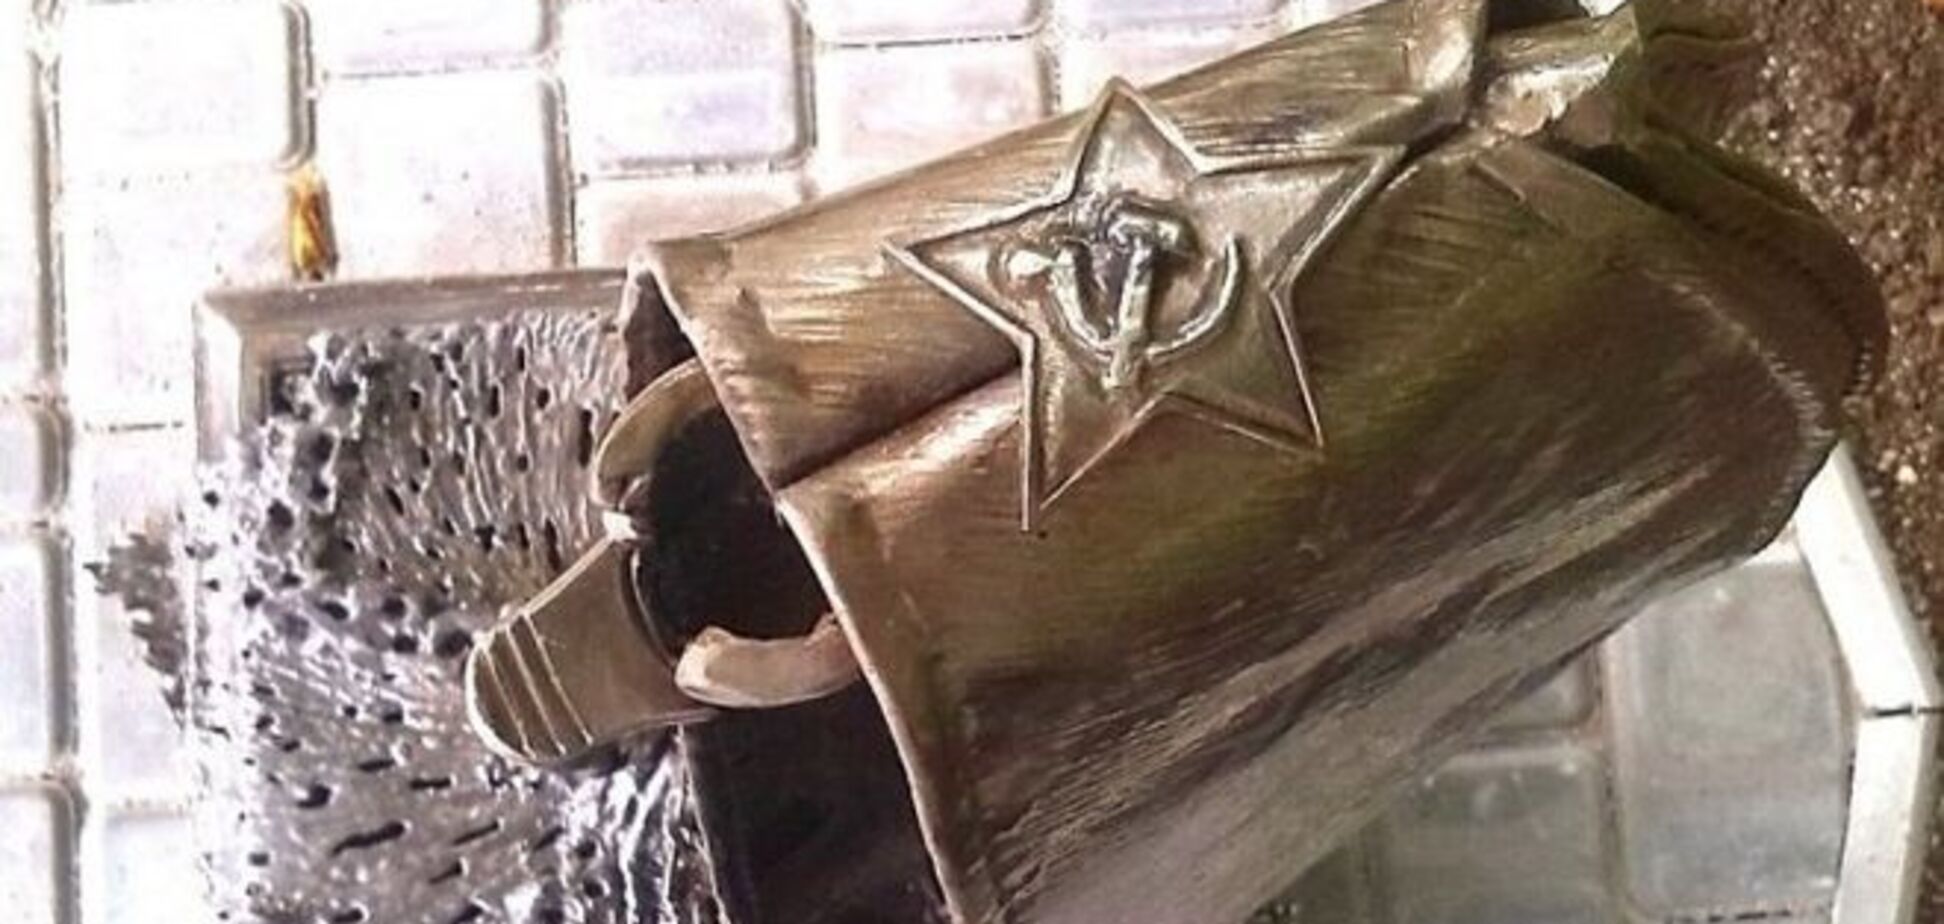 Фашизм не пройдет! В оккупированном Донецке установили памятник штыку и пилотке